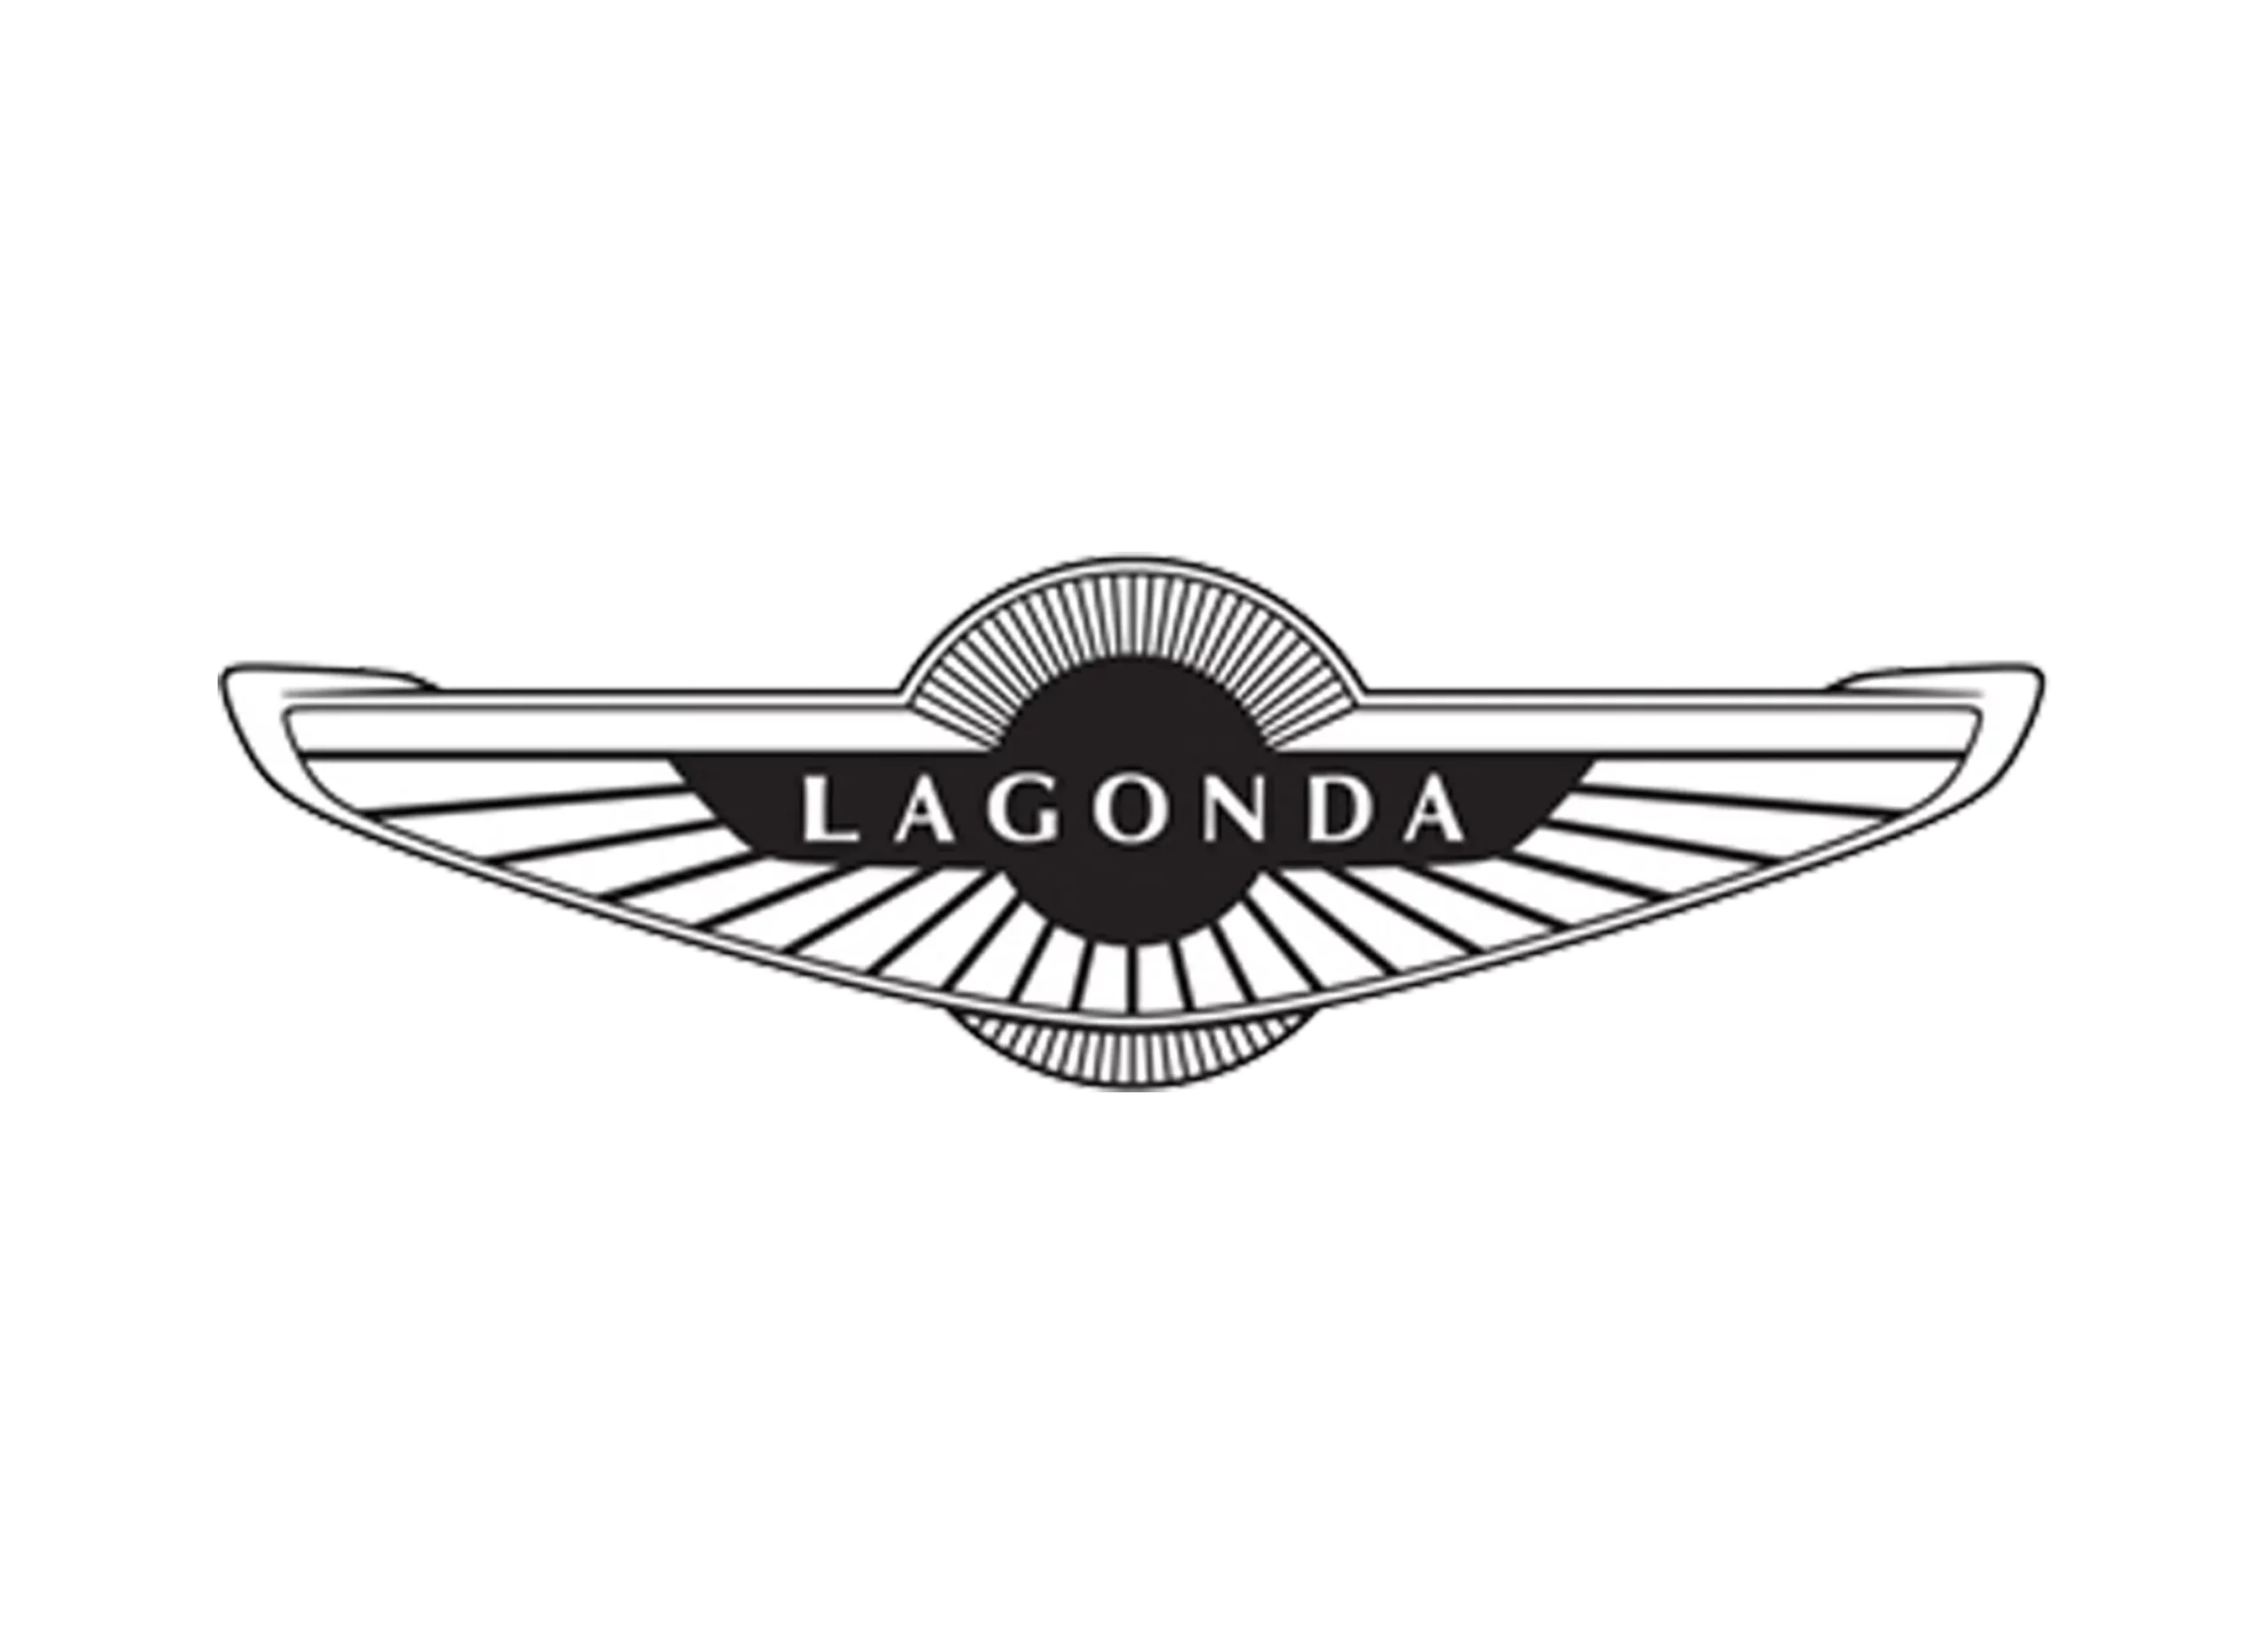 Lagonda logo old